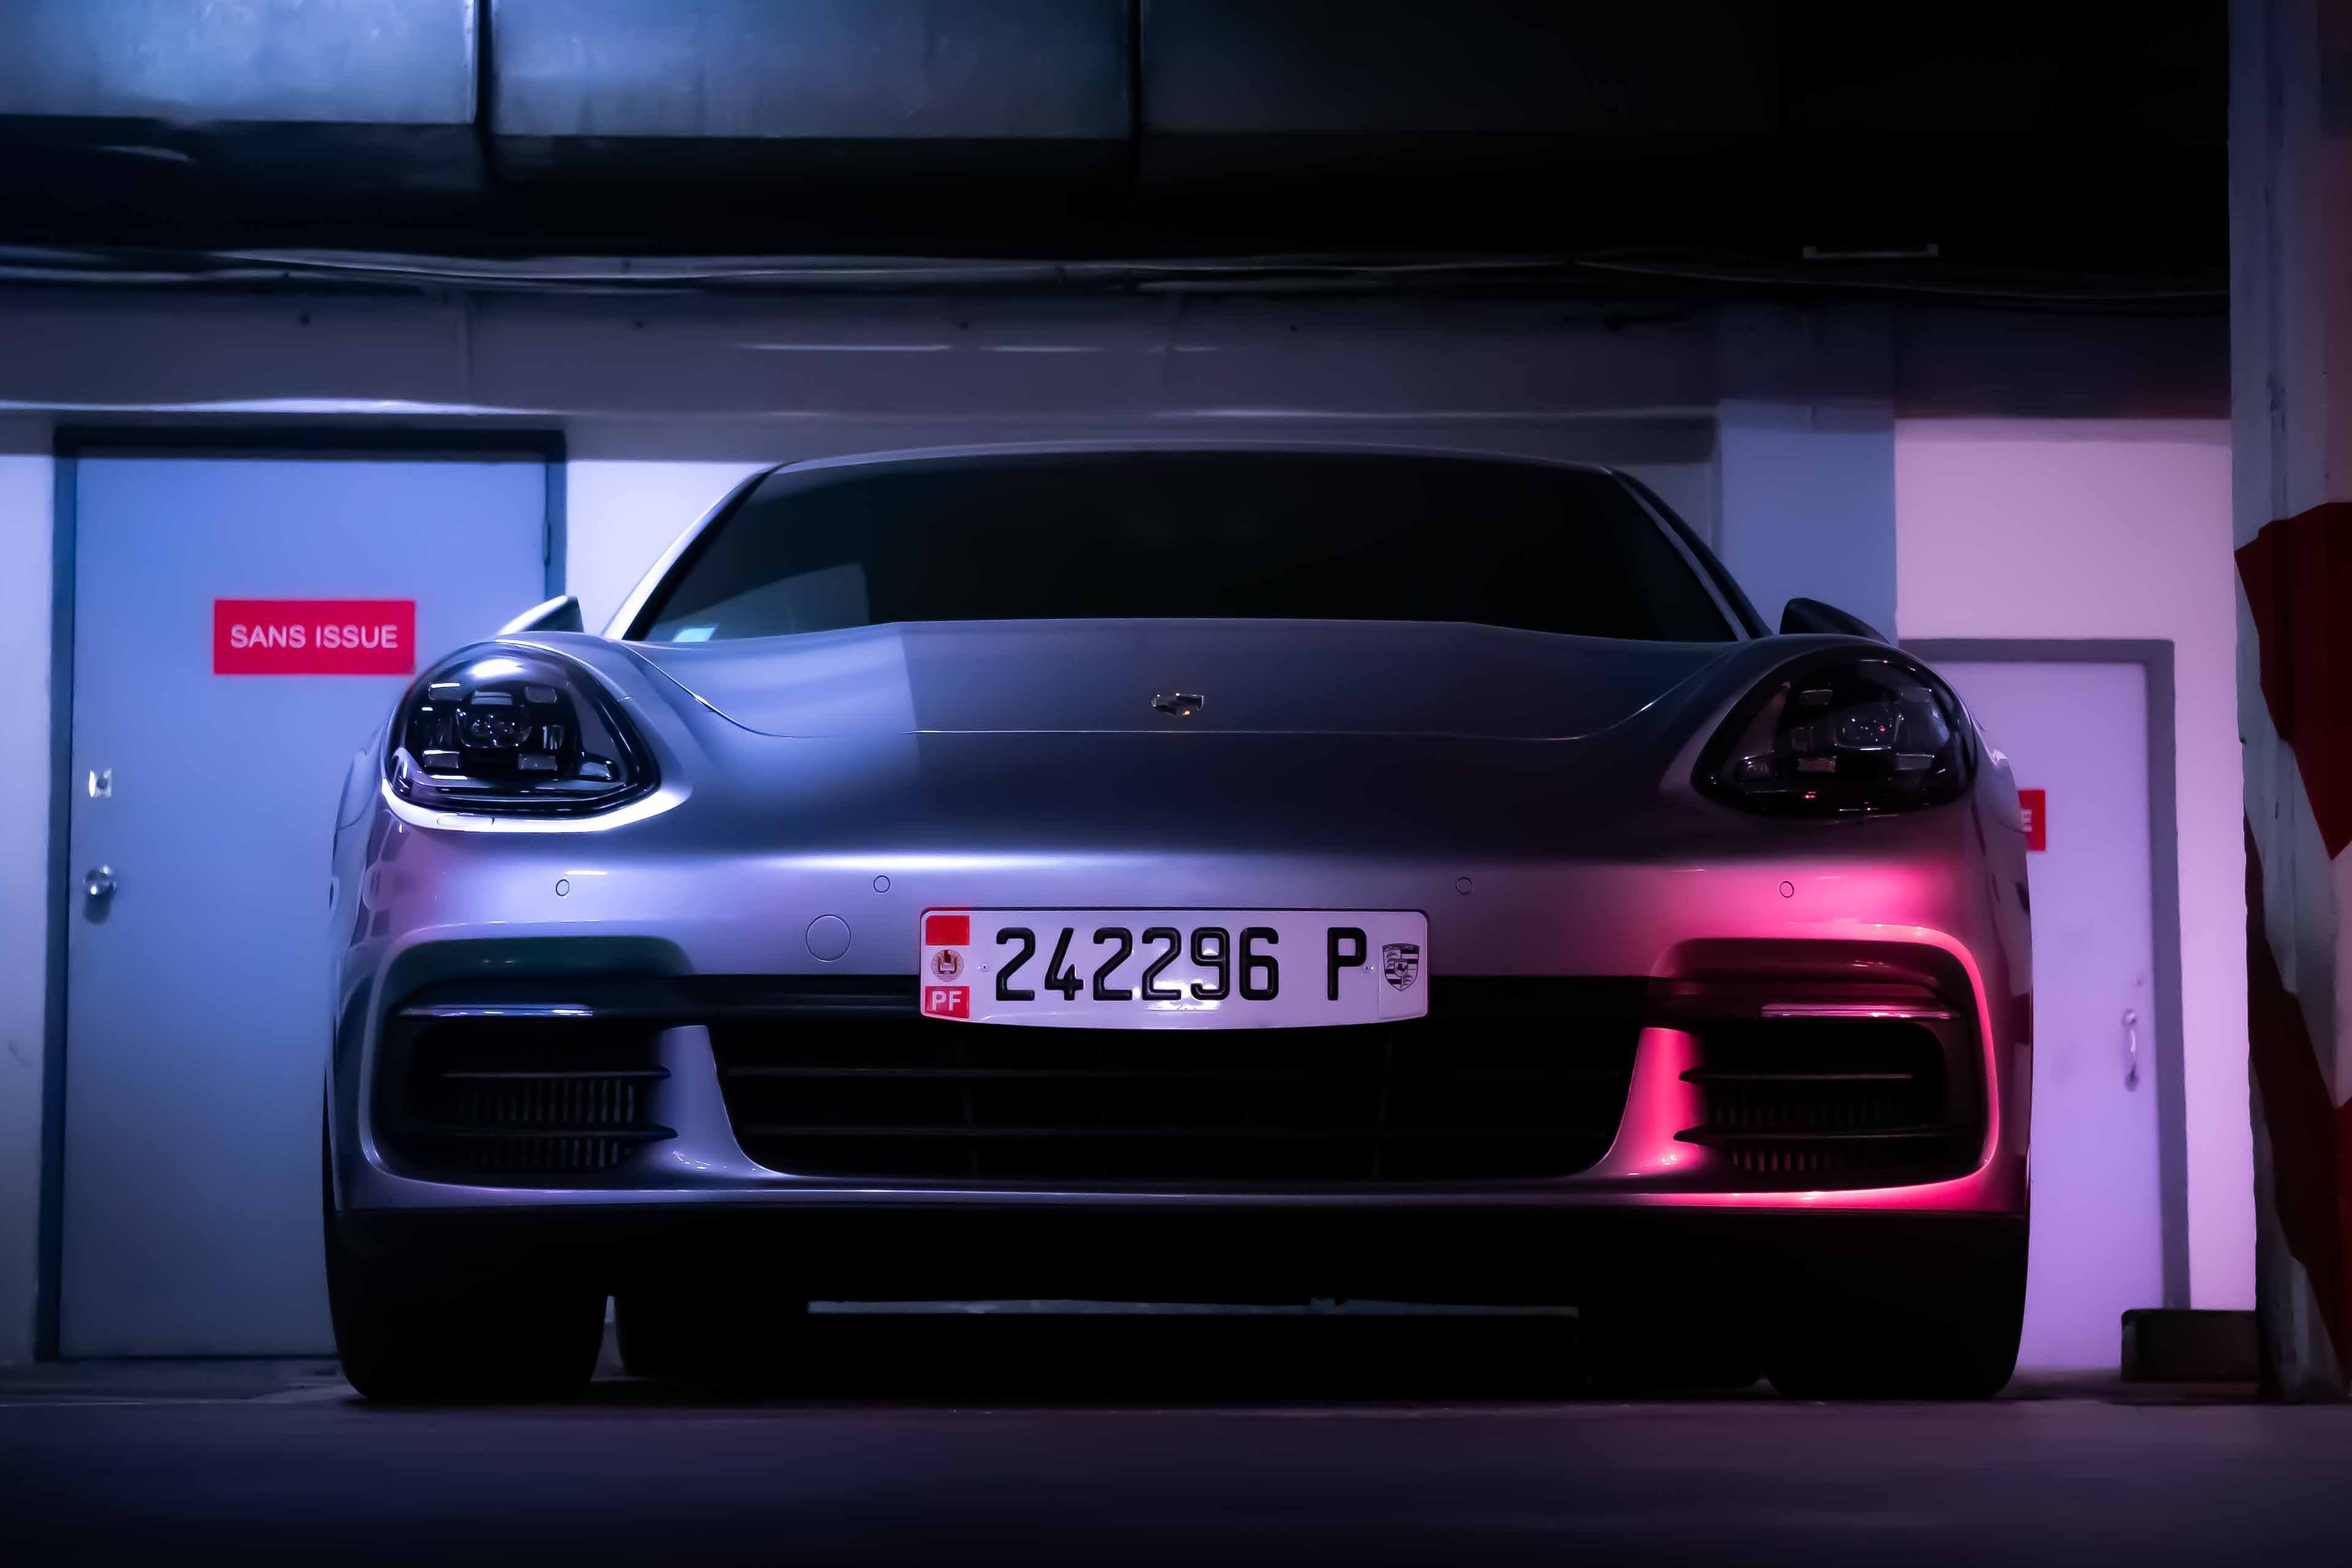 Hình ảnh đuôi xe siêu xe Porsche cực đẹp